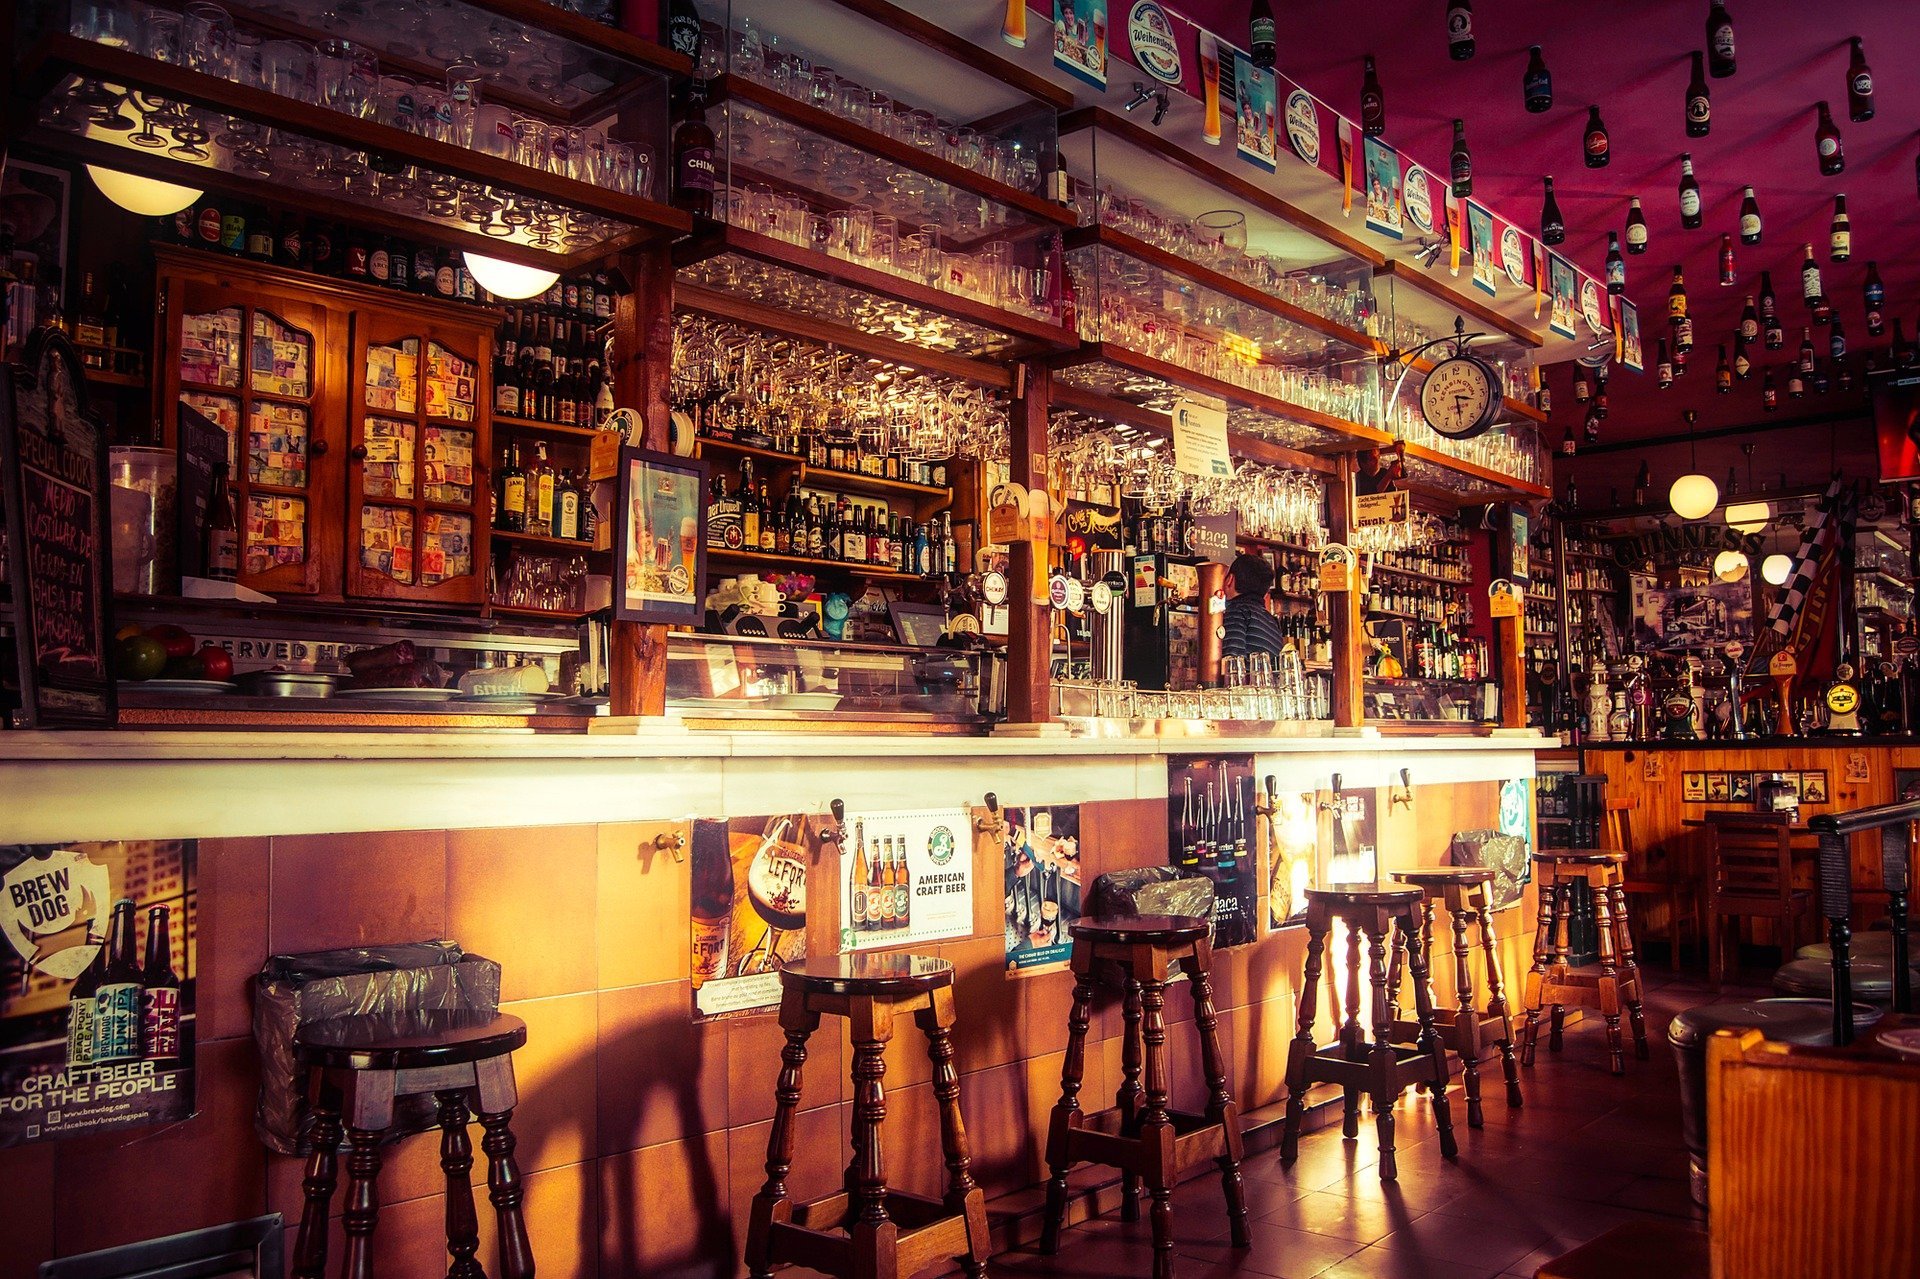 A quaint rustic bar. | Source: Pixabay